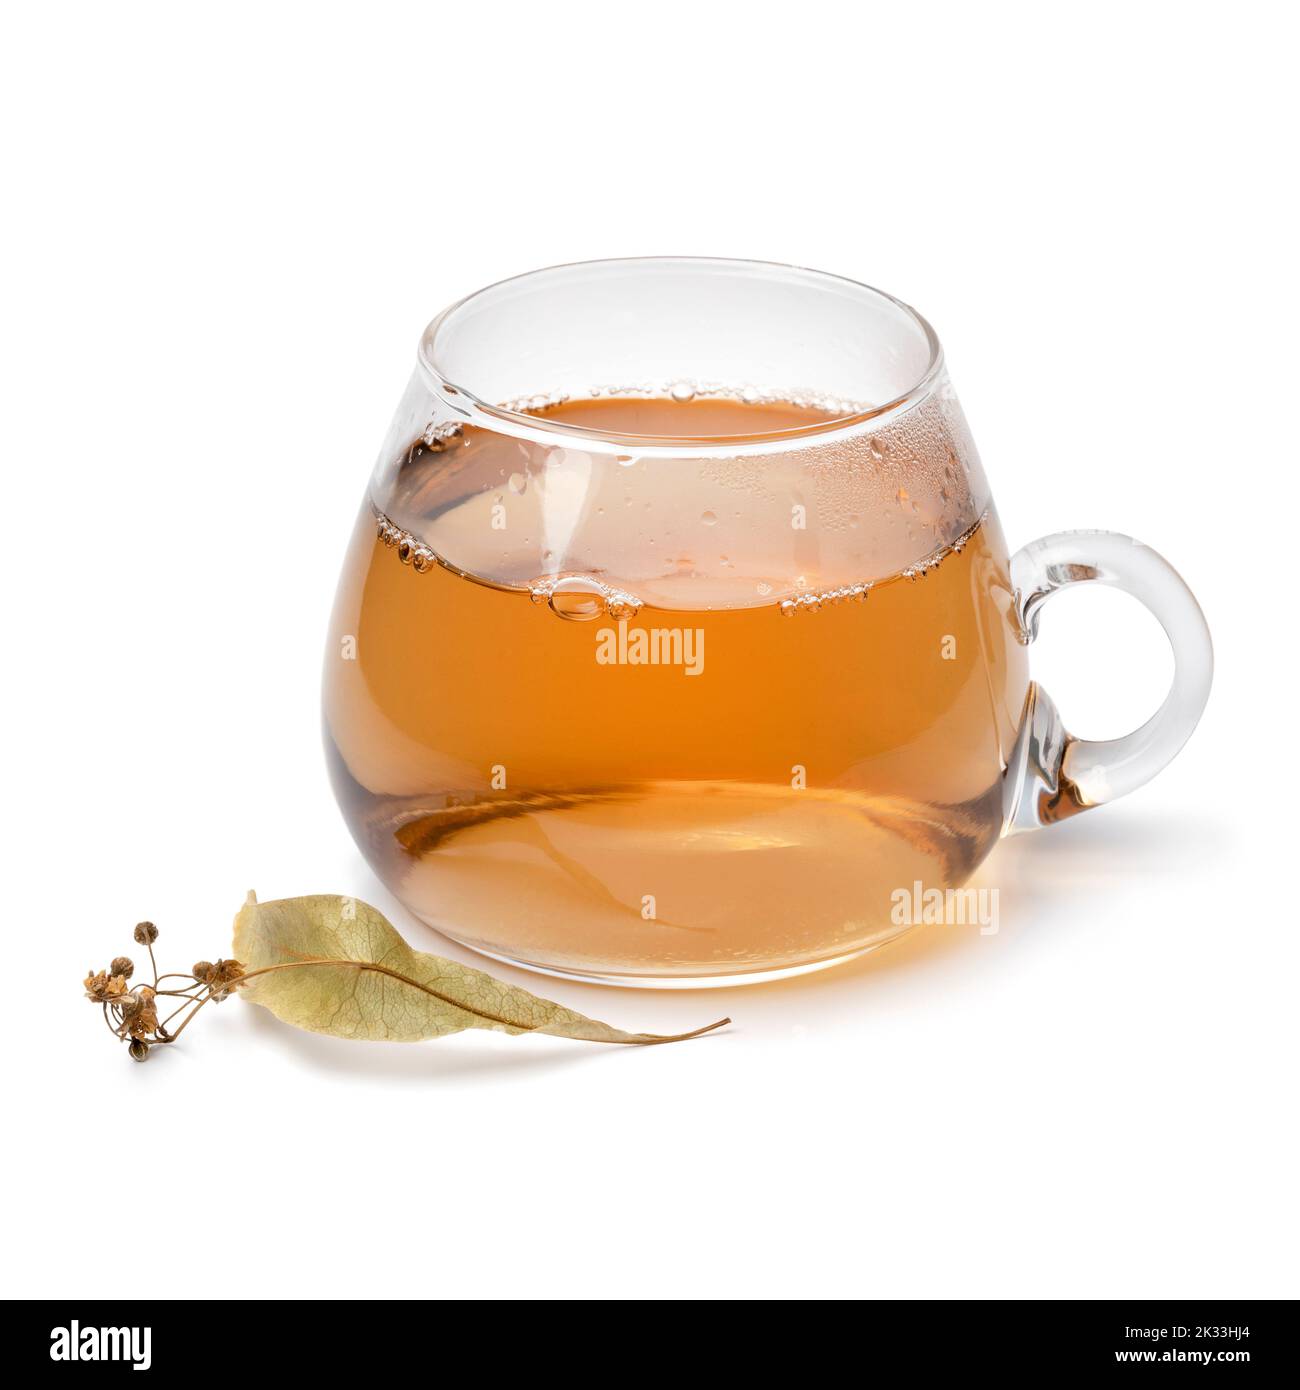 Taza de cristal con té de flor de tilia aislado sobre fondo blanco Foto de stock